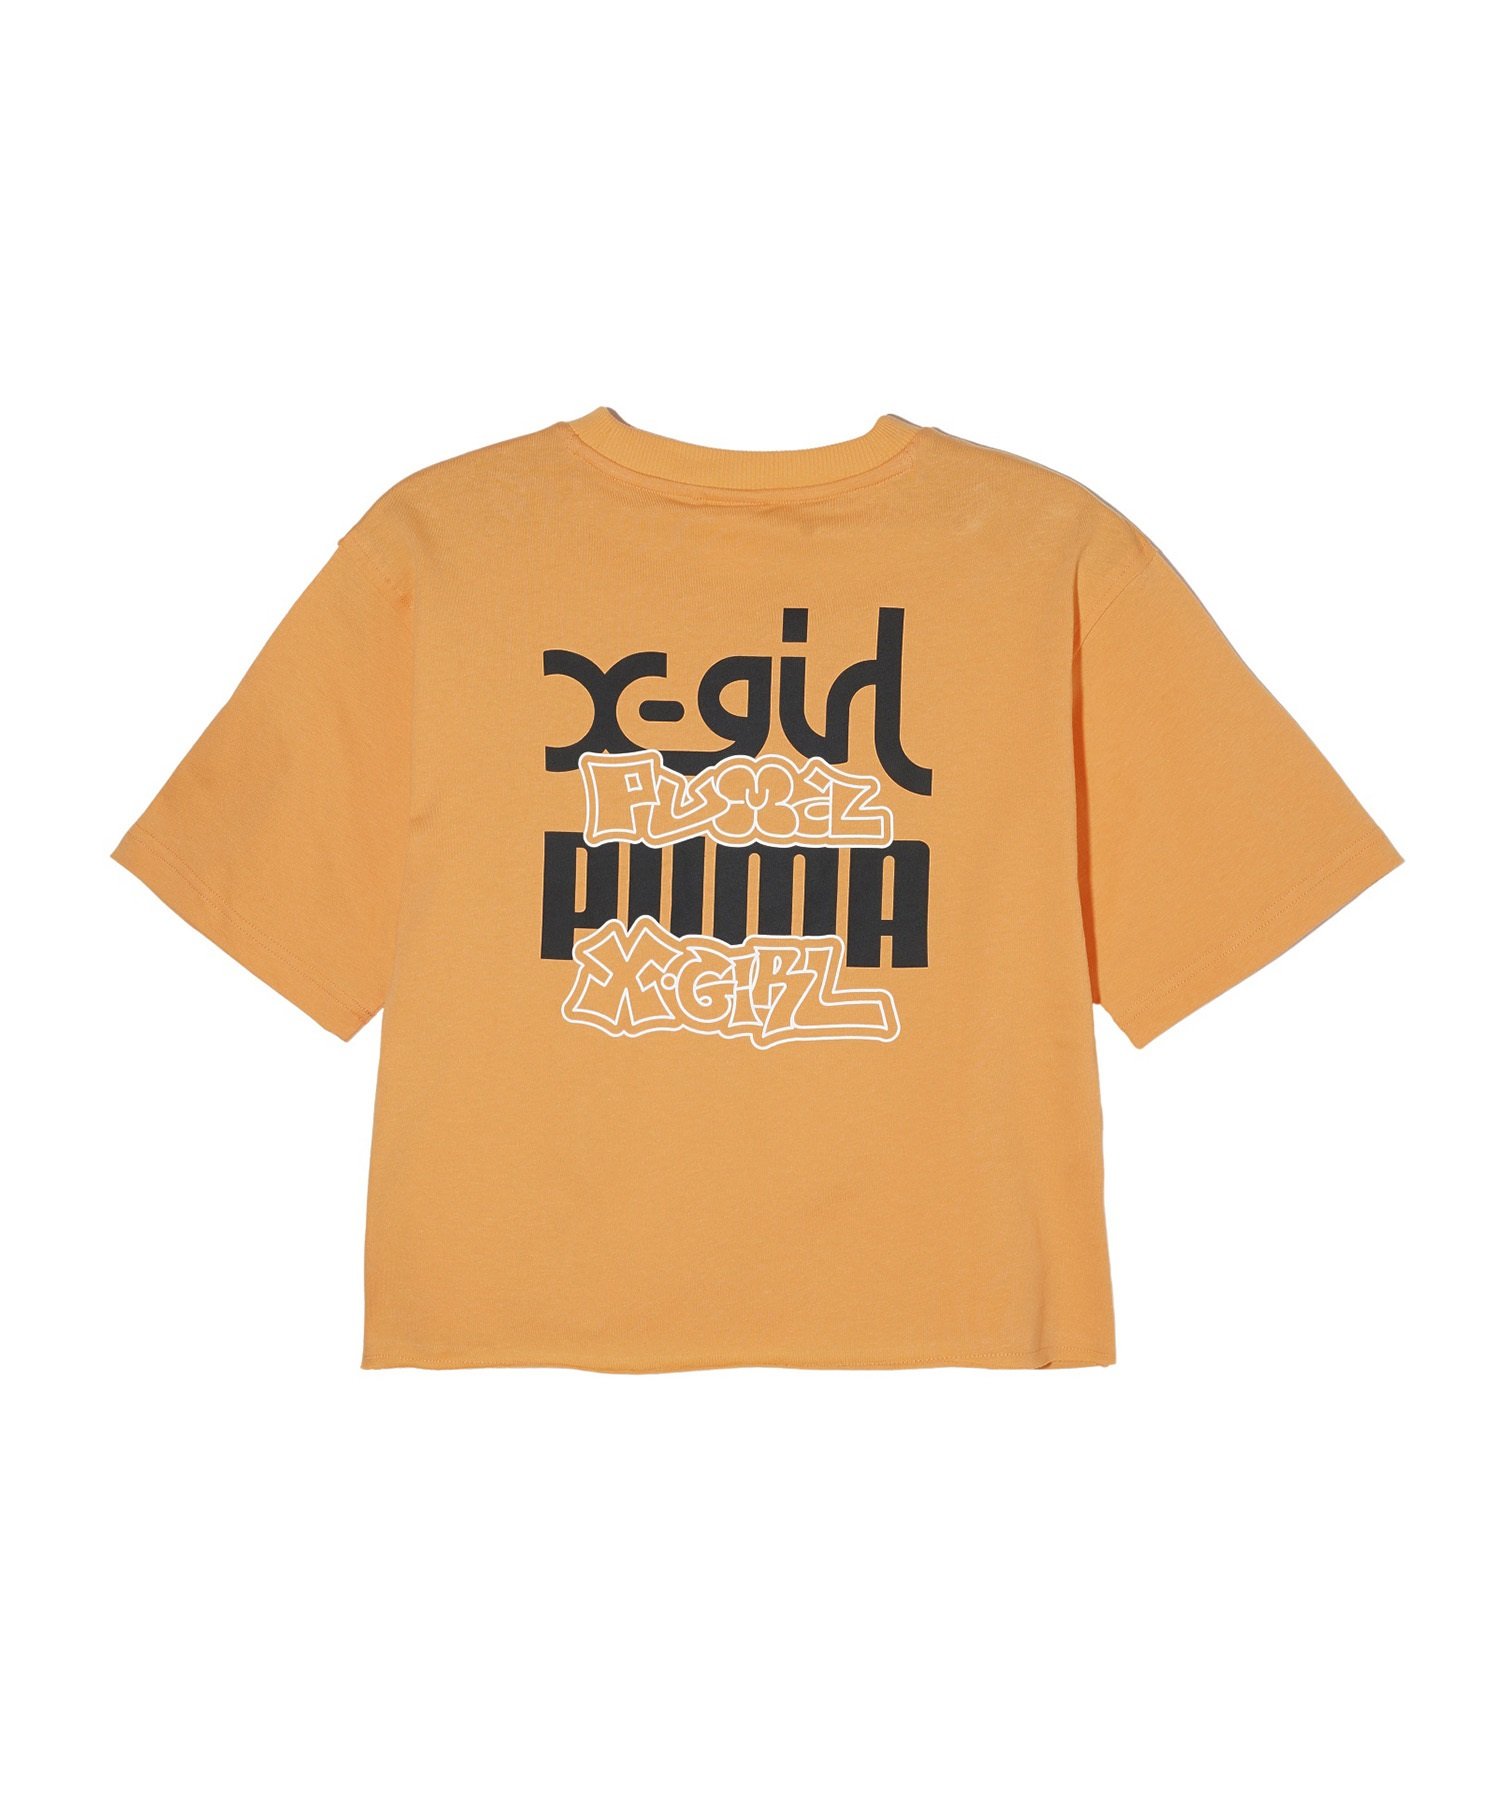 【マトメガイ対象】PUMA プーマ × X-GIRL エックスガール コラボ ウィメンズ グラフィック 半袖 Tシャツ レディース 624723(46-S)